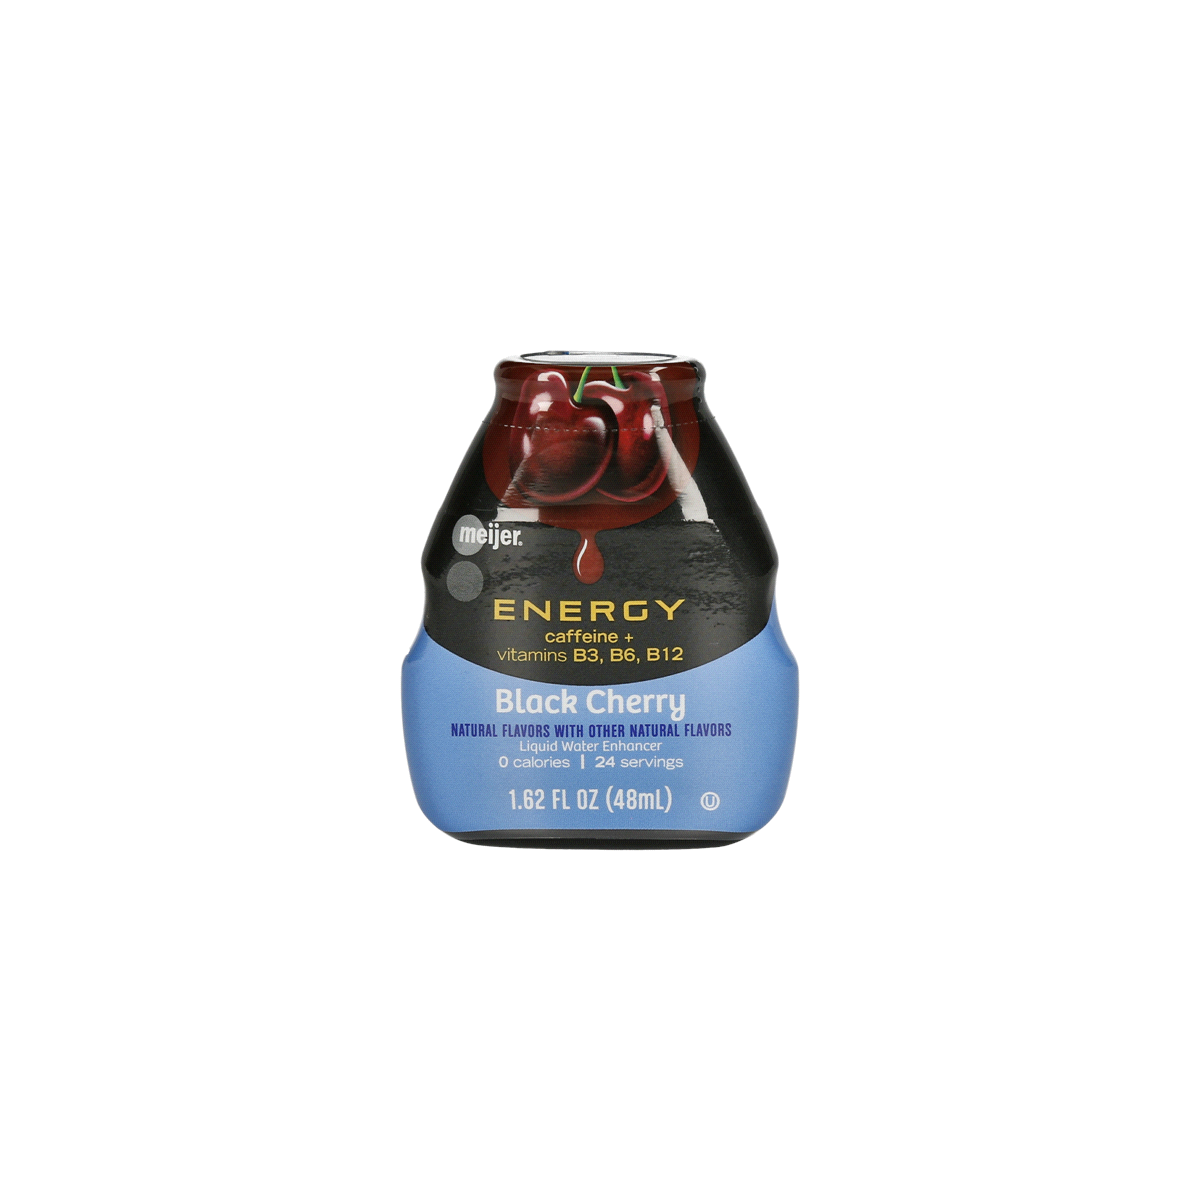 slide 1 of 4, Meijer Energy Liquid Water Enhancer Black Cherry, 1.62 oz